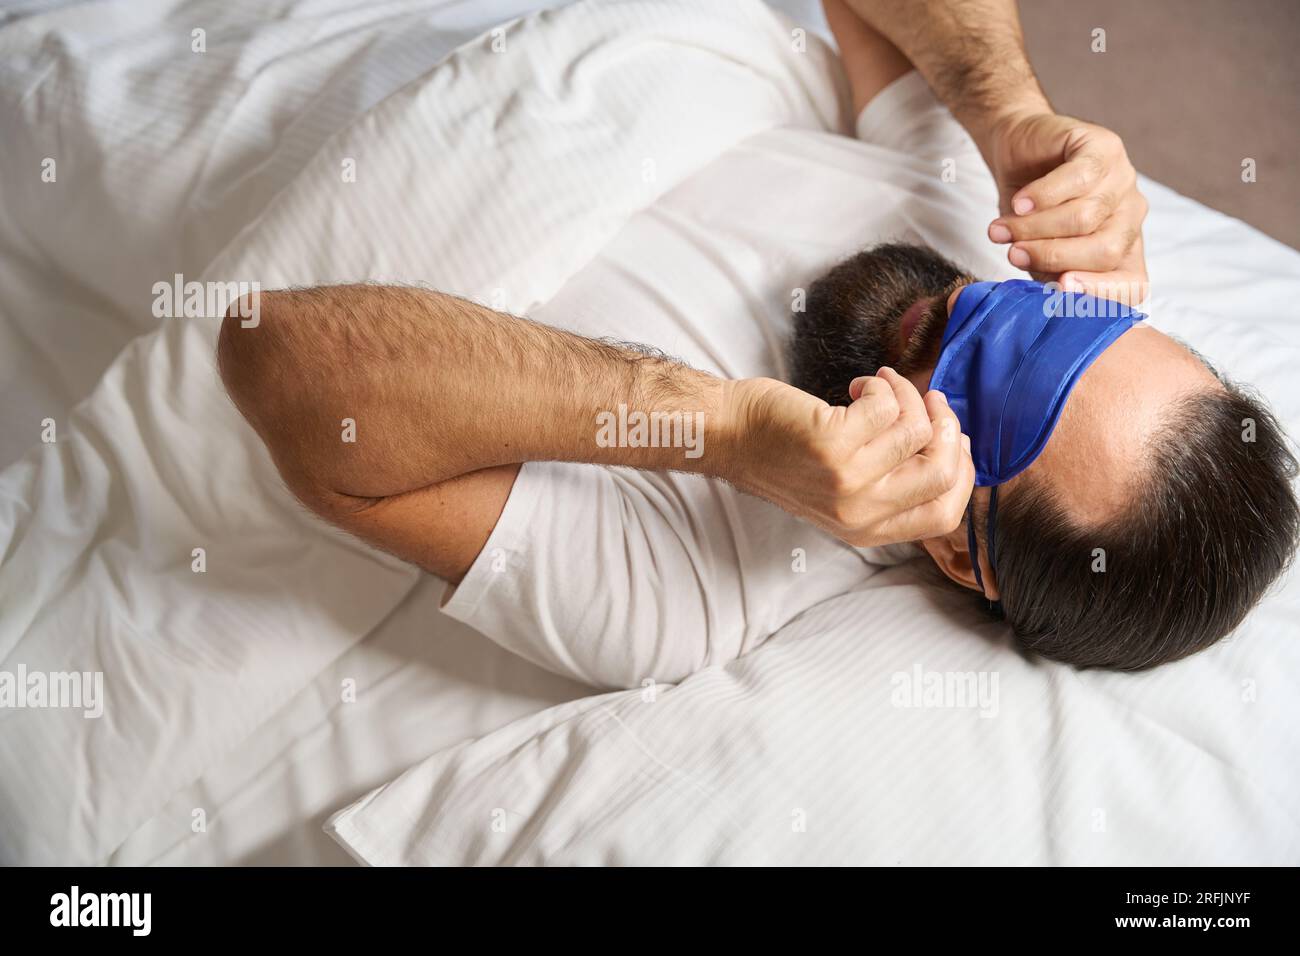 Le mâle se réveille et enlève son bandage de sommeil, il a une barbe  épaisse bien soignée Photo Stock - Alamy